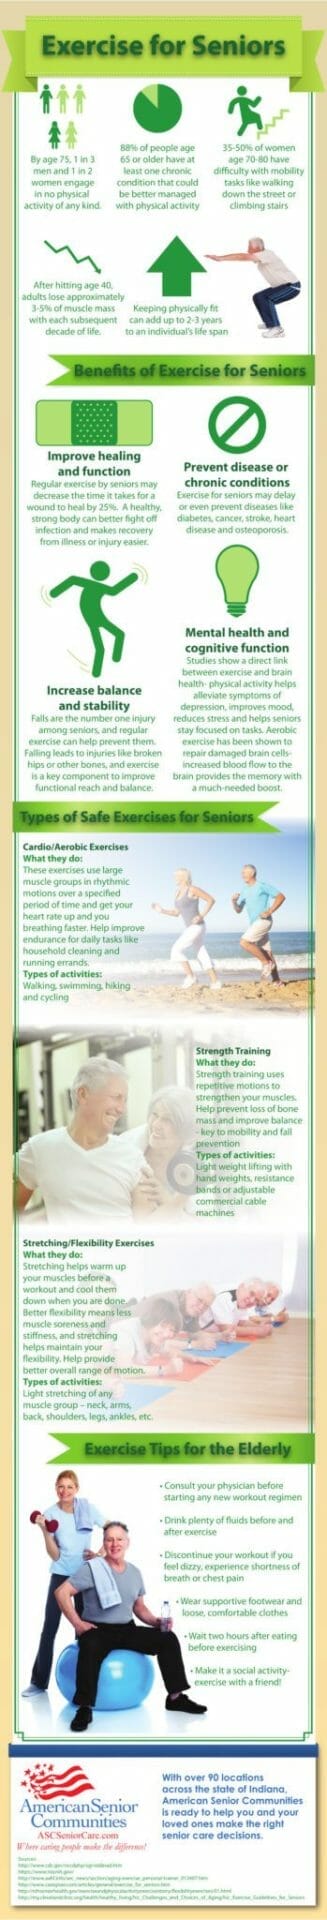 Excercise for Seniors Over 75